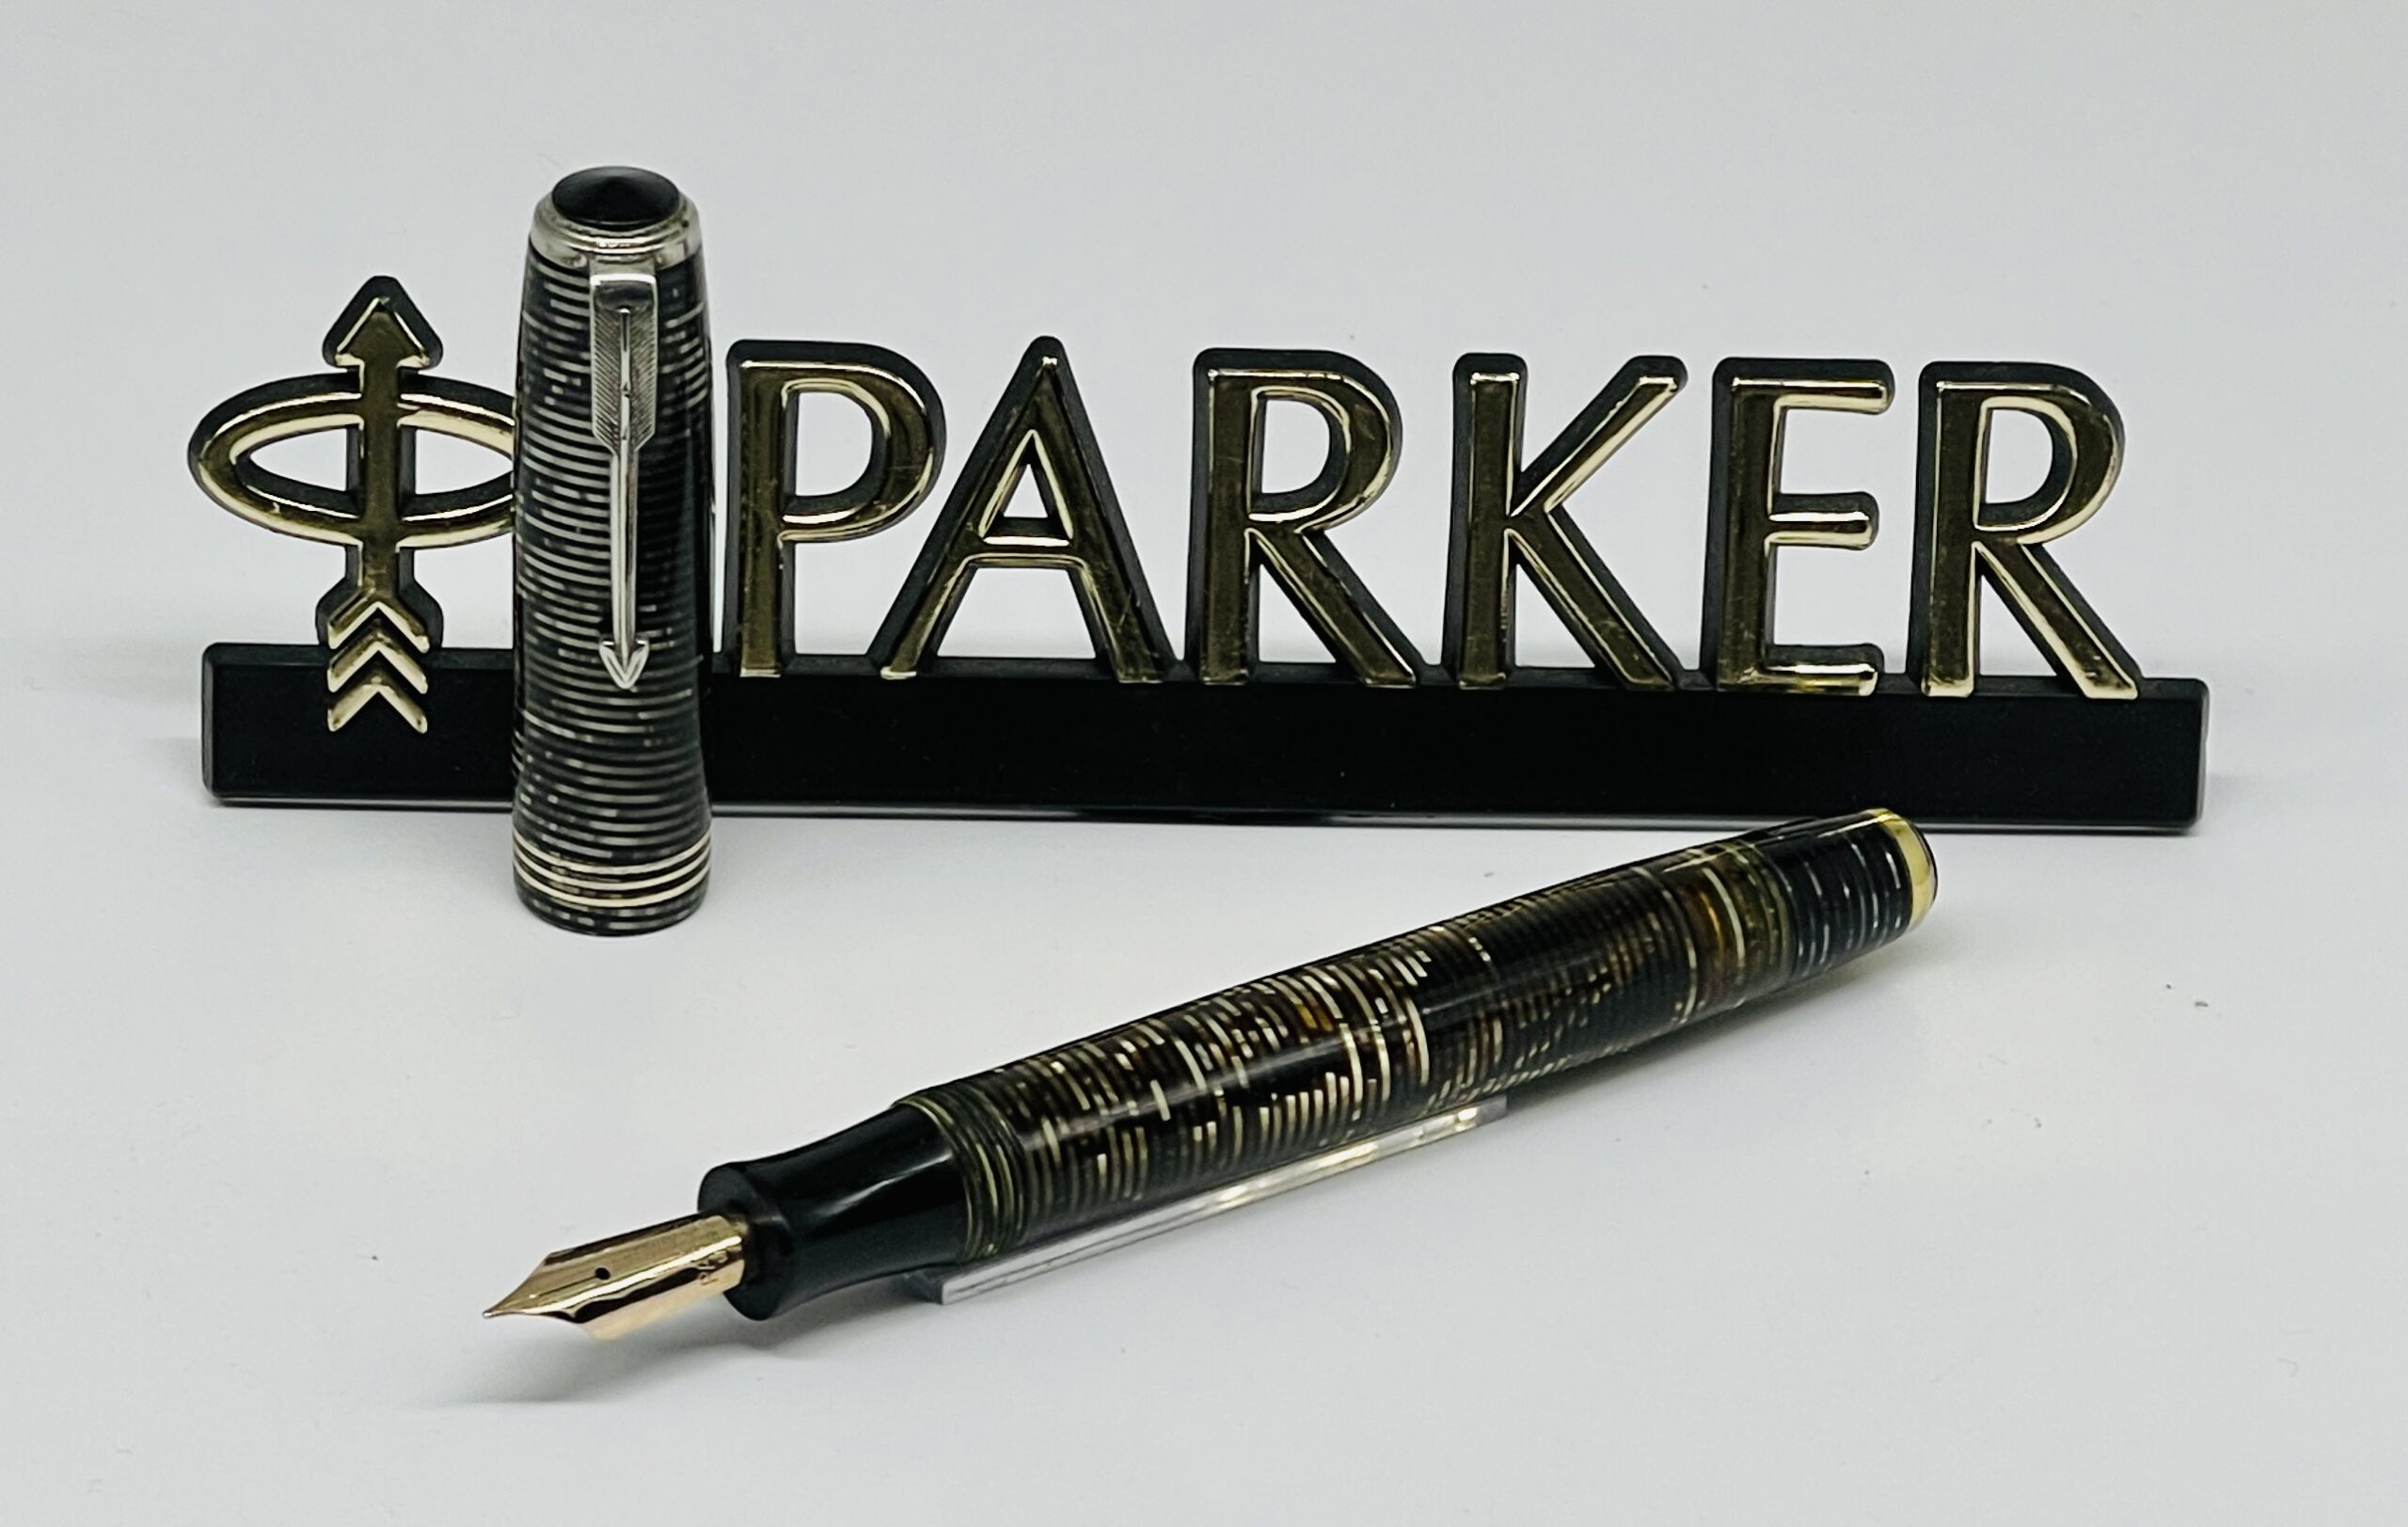 Parker penna stilografica, vintage retrò attrezzature di scrittura